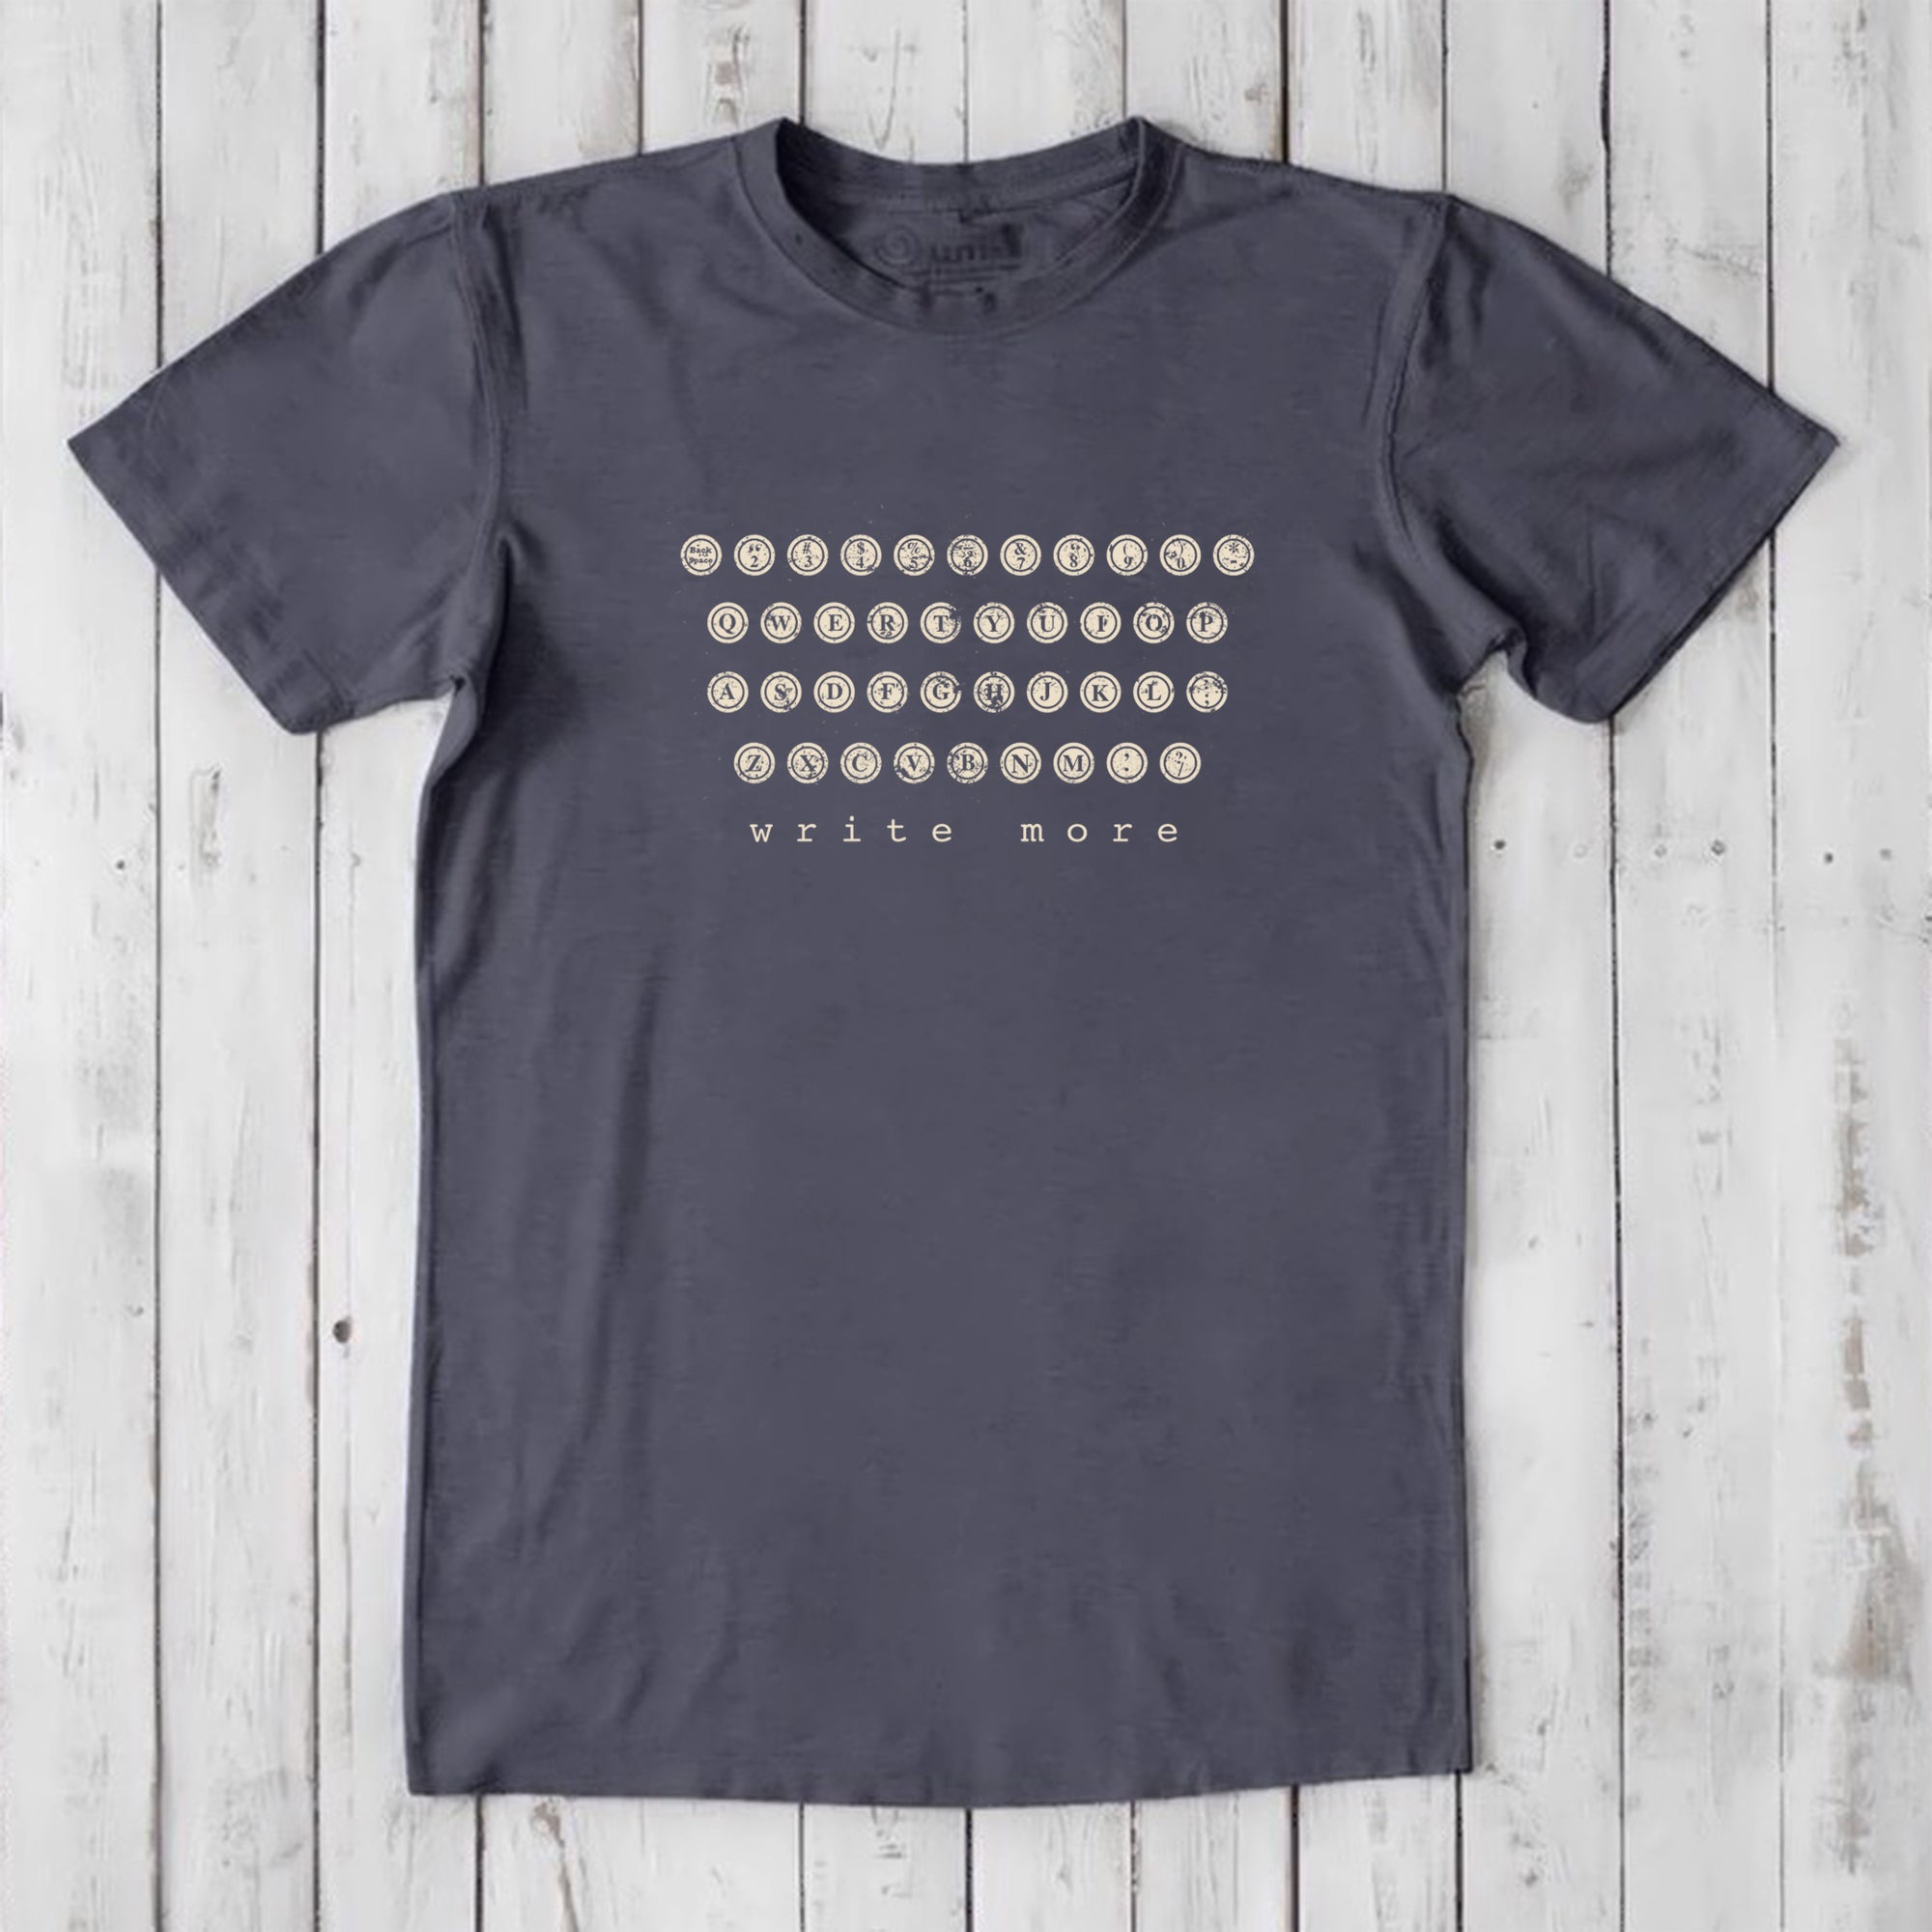 Typewriter T-shirt for Men - Write More Uni-T